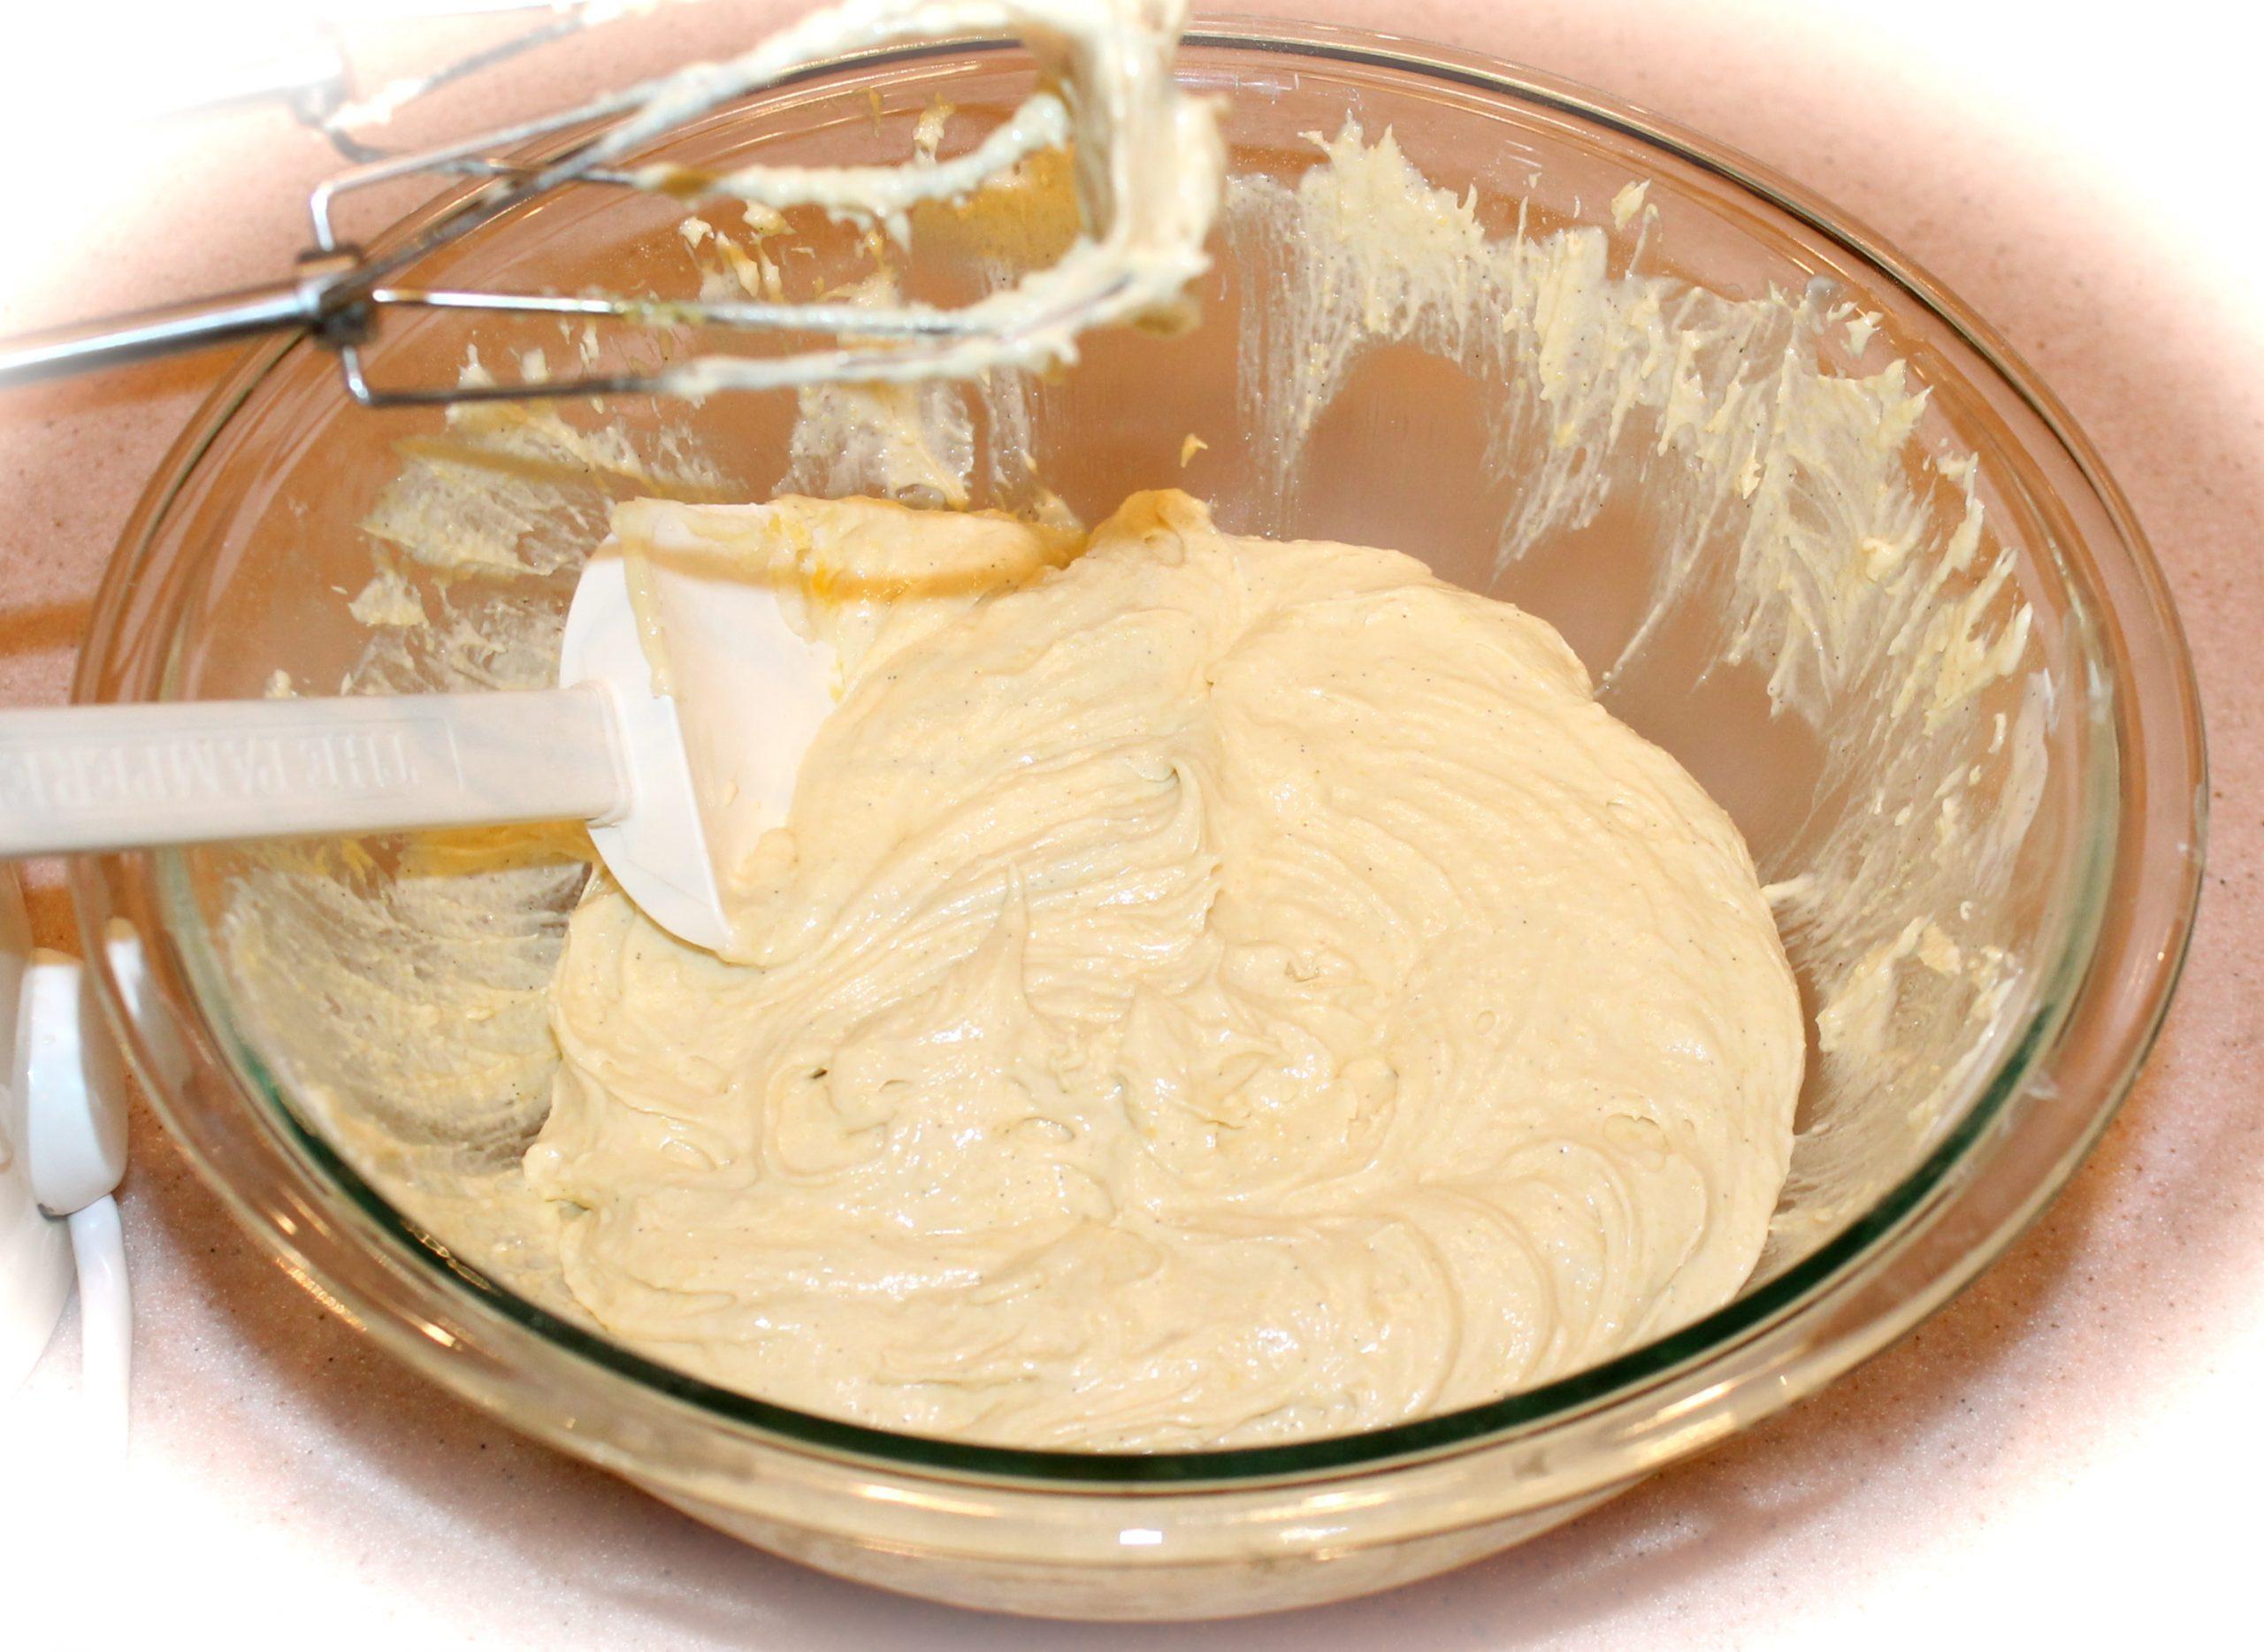 Trộn bột kỹ để giúp cốt bánh khi nướng ngon hơn